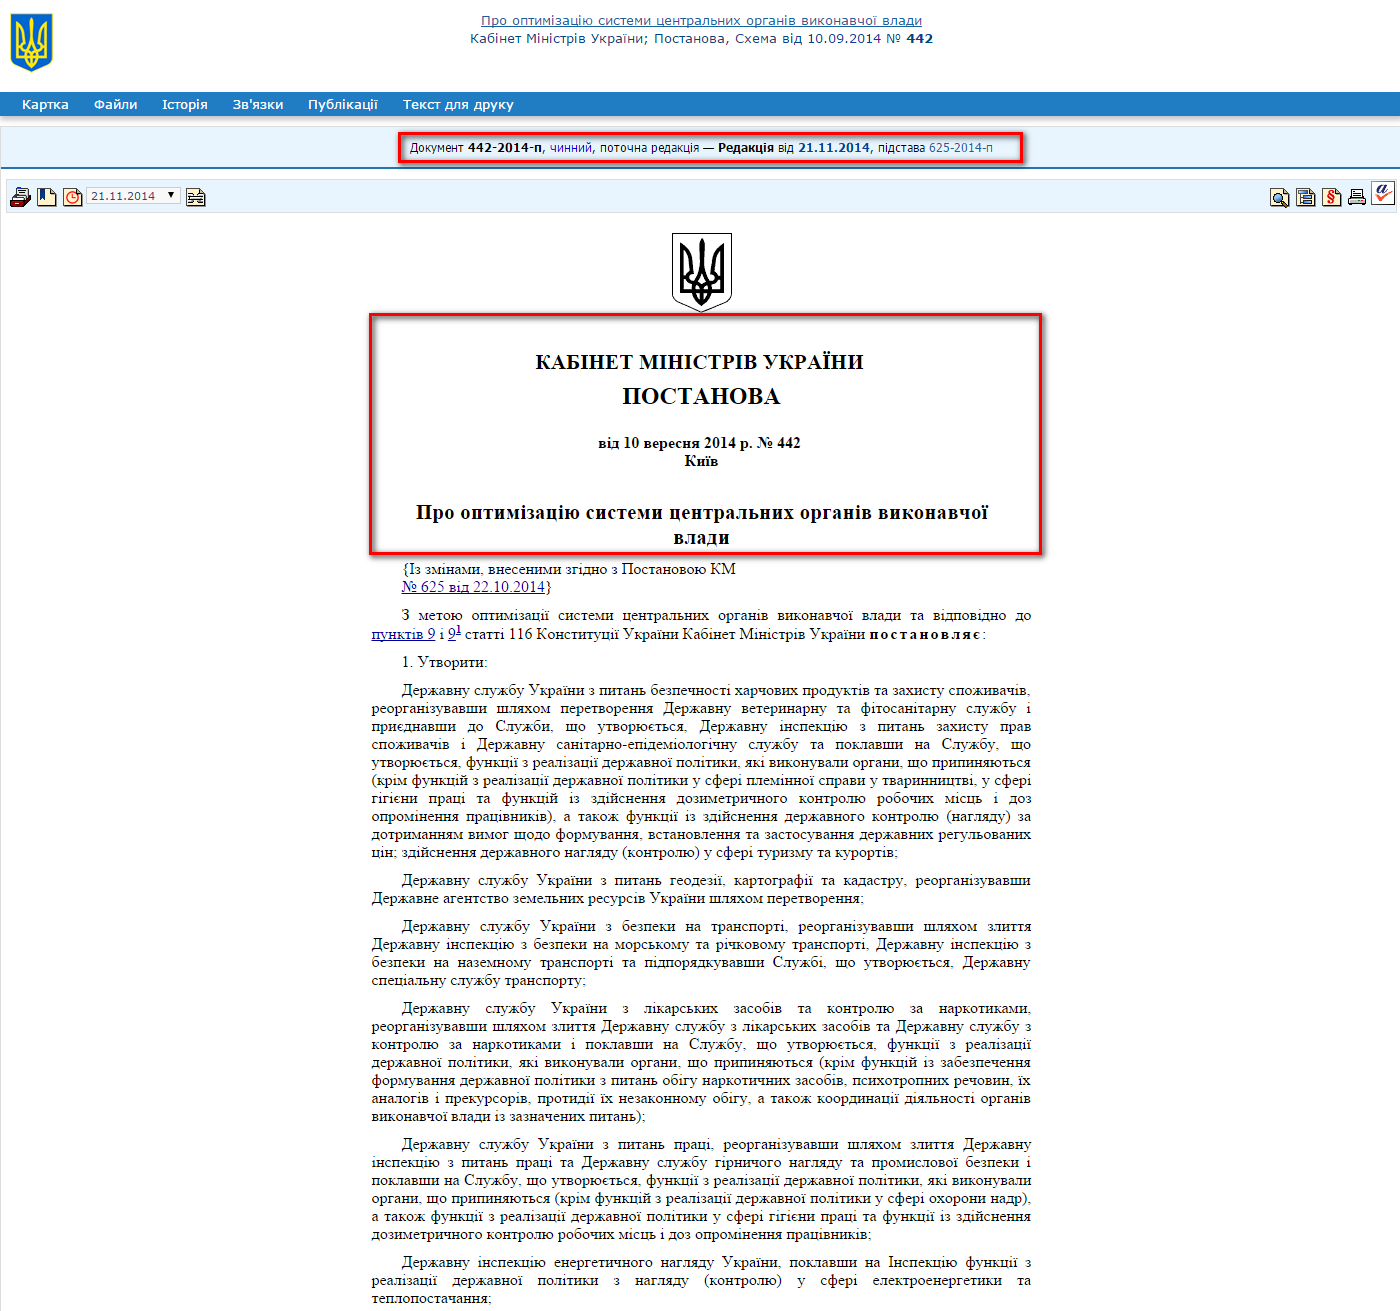 http://zakon1.rada.gov.ua/laws/show/442-2014-%D0%BF